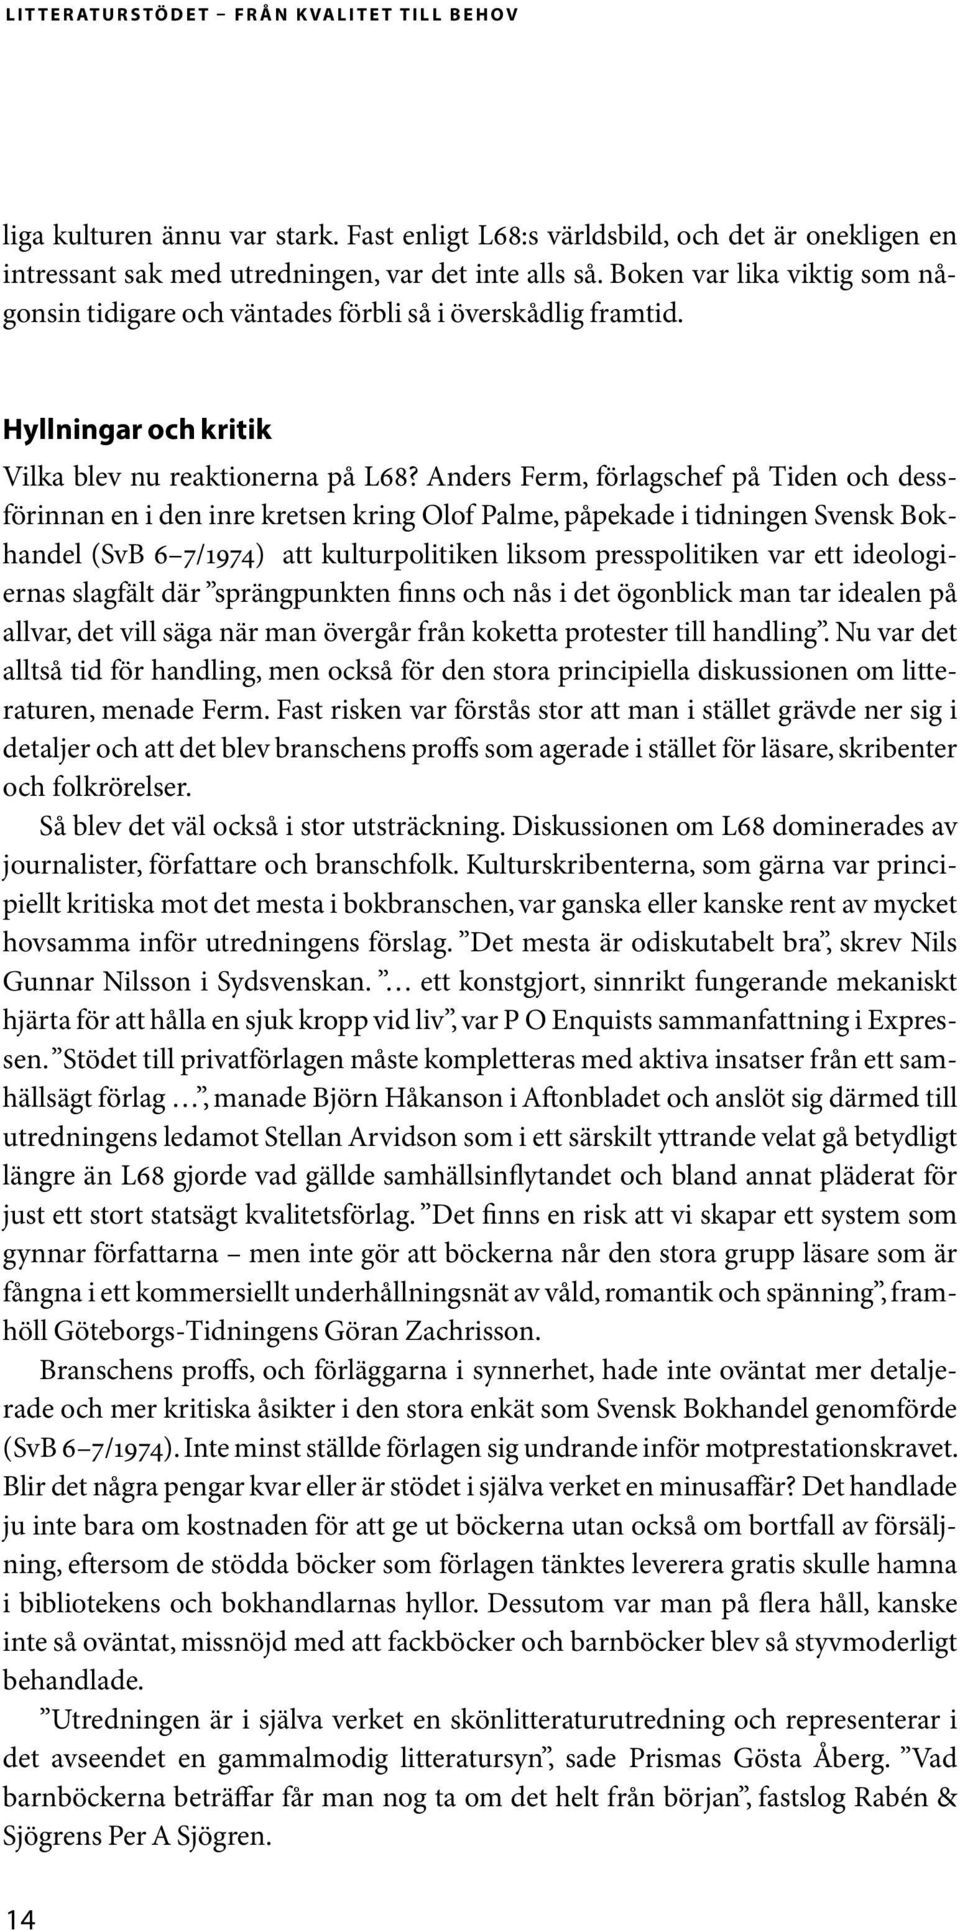 Anders Ferm, förlagschef på Tiden och dessförinnan en i den inre kretsen kring Olof Palme, påpekade i tidningen Svensk Bokhandel (SvB 6 7/1974) att kulturpolitiken liksom presspolitiken var ett